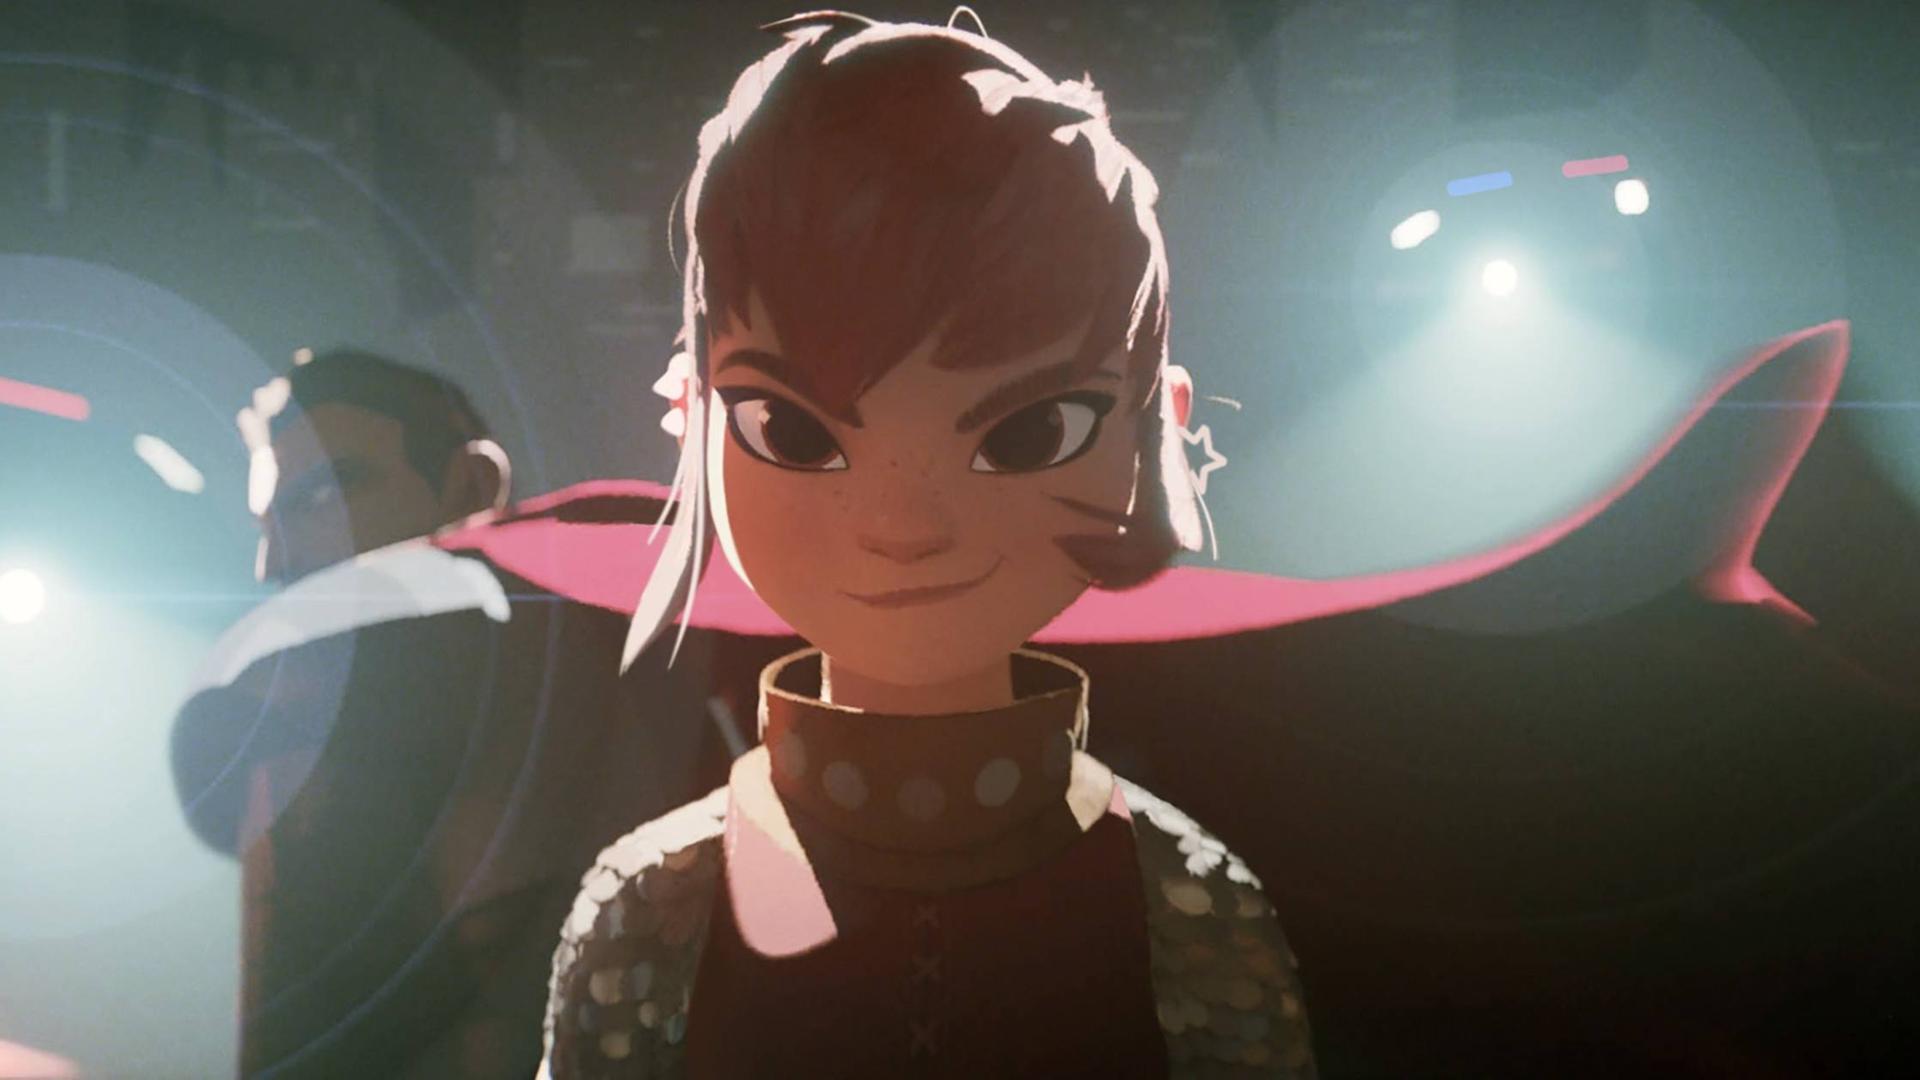 Die rothaarige Hauptfigur aus dem Animationsfilm "Nimona" blickt selbstbewusst in die Kamera.